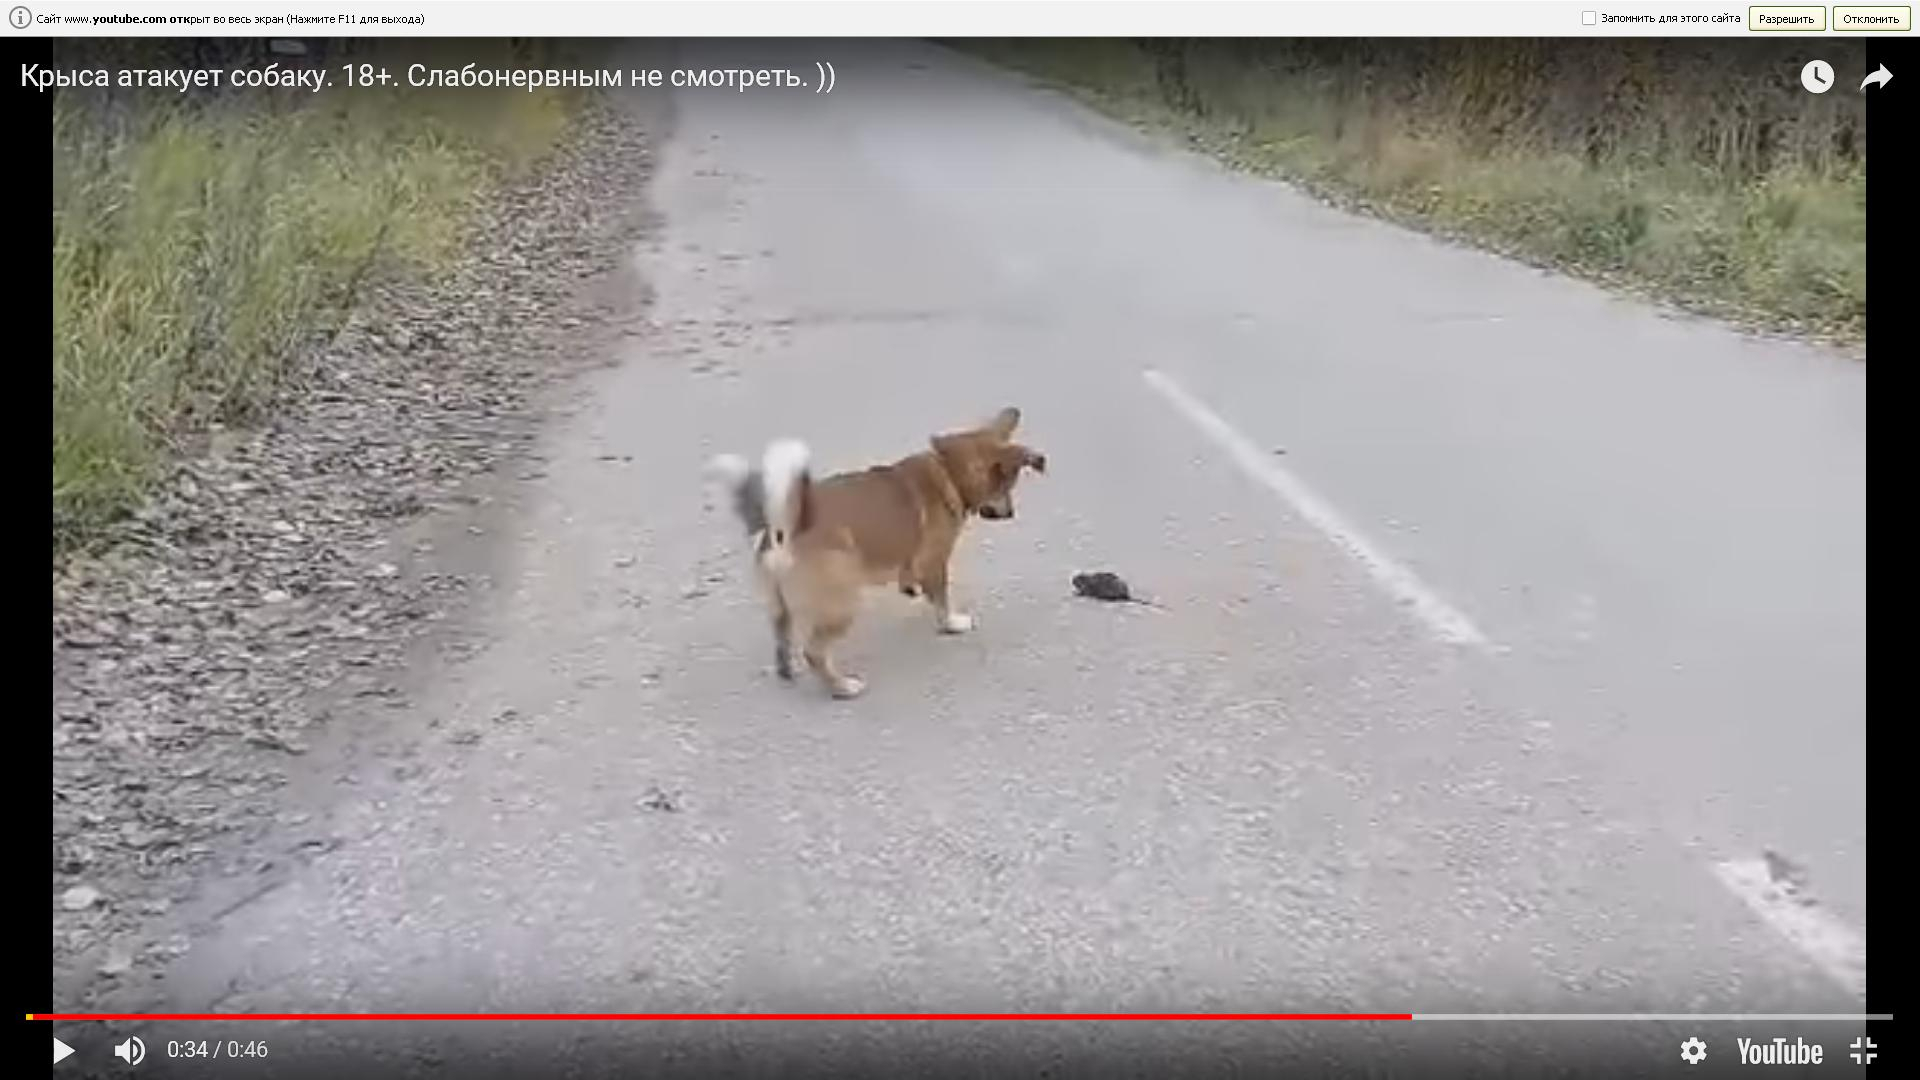 Появилось видео, как крыса атакует собаку в Коми